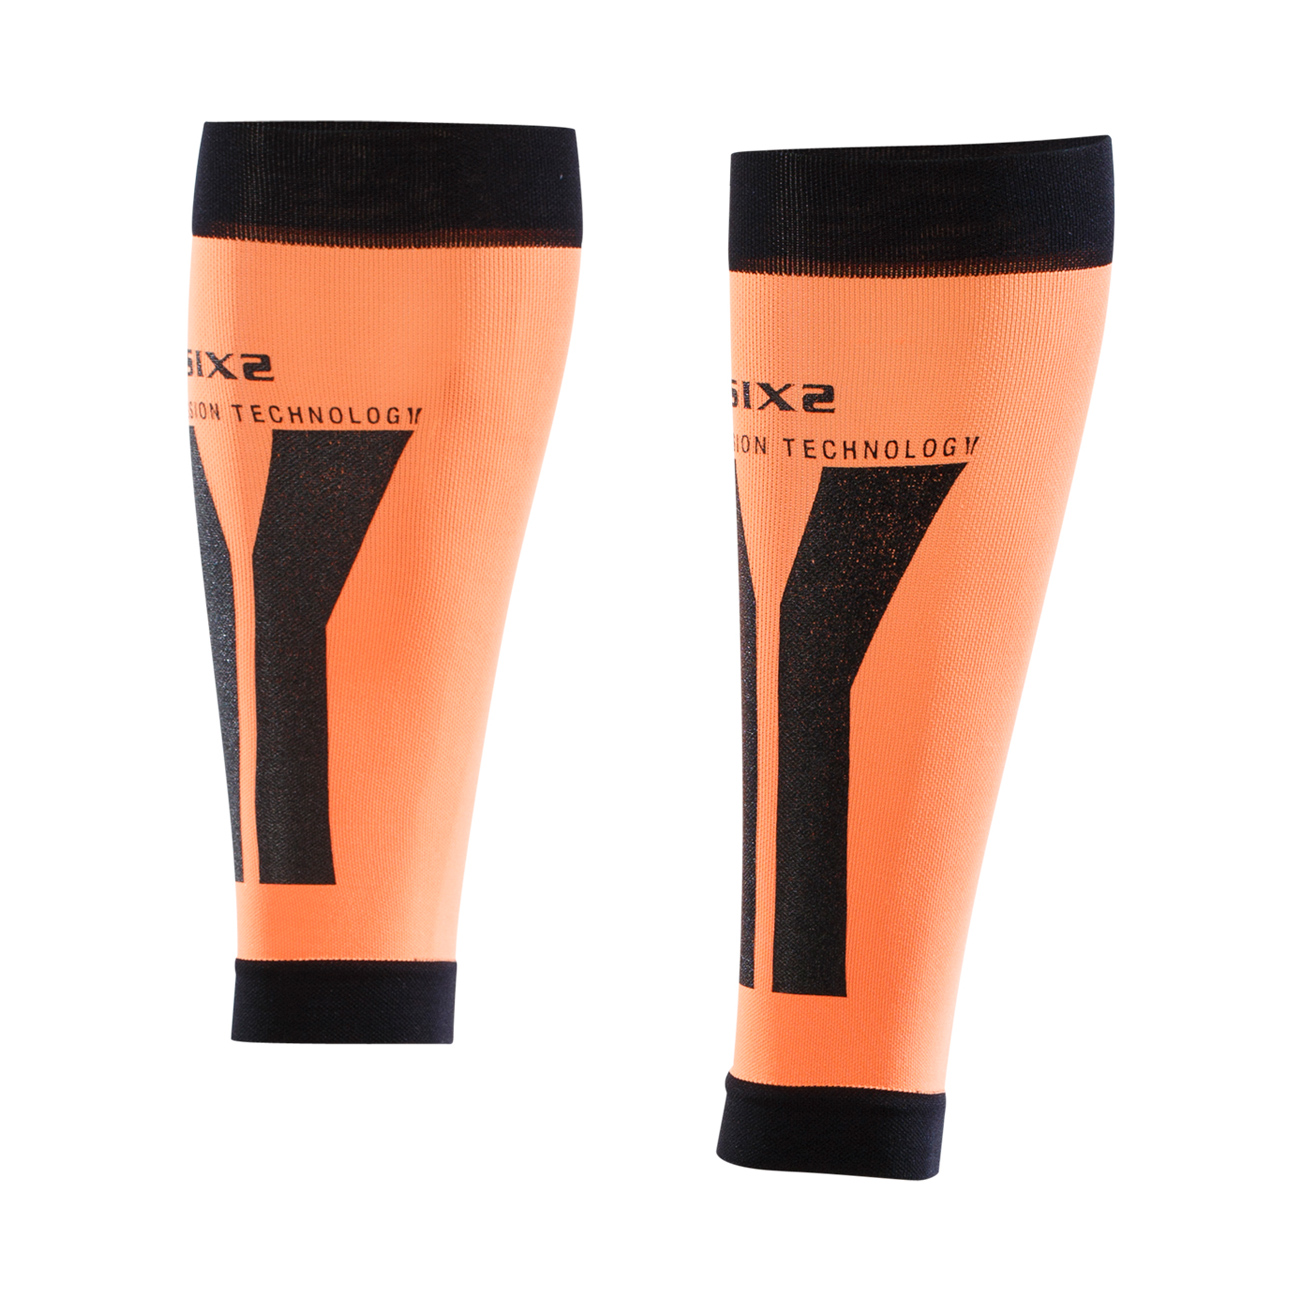 SIX2 Kerékpáros Térdig érő Melegítő - CALF - Narancssárga/fekete